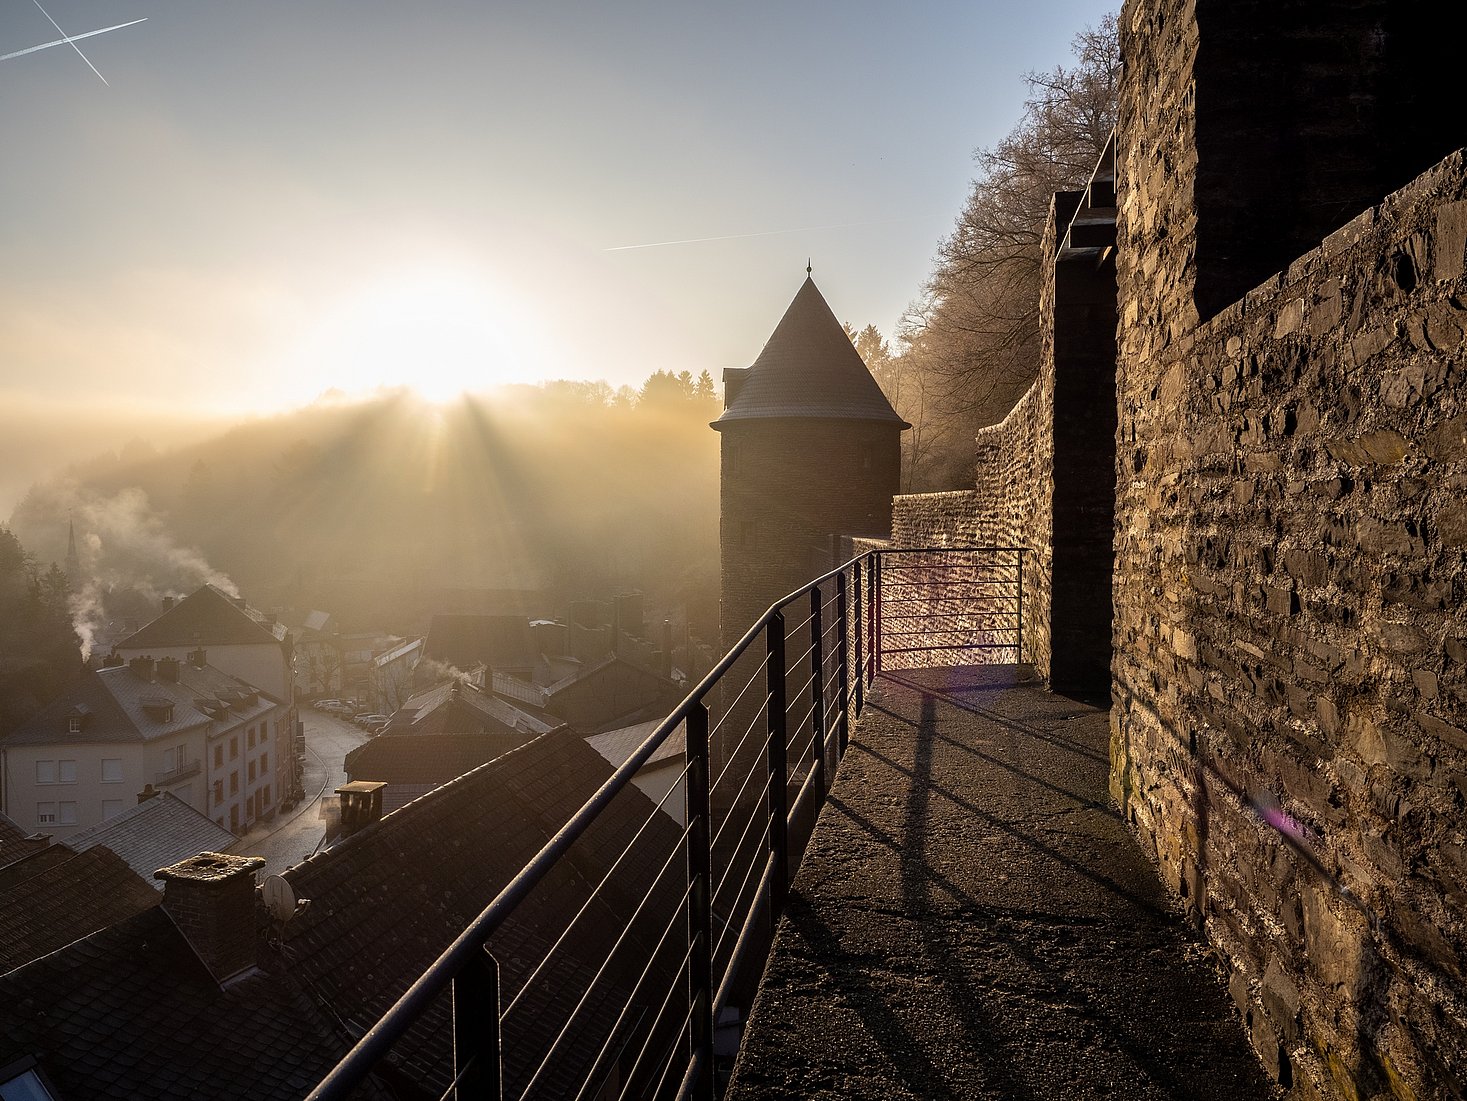 Une photo prise sur un mur de forteresse, avec le lever du soleil projetant de la lumière sur le château et mettant en évidence la petite tour contre le ciel bleu.